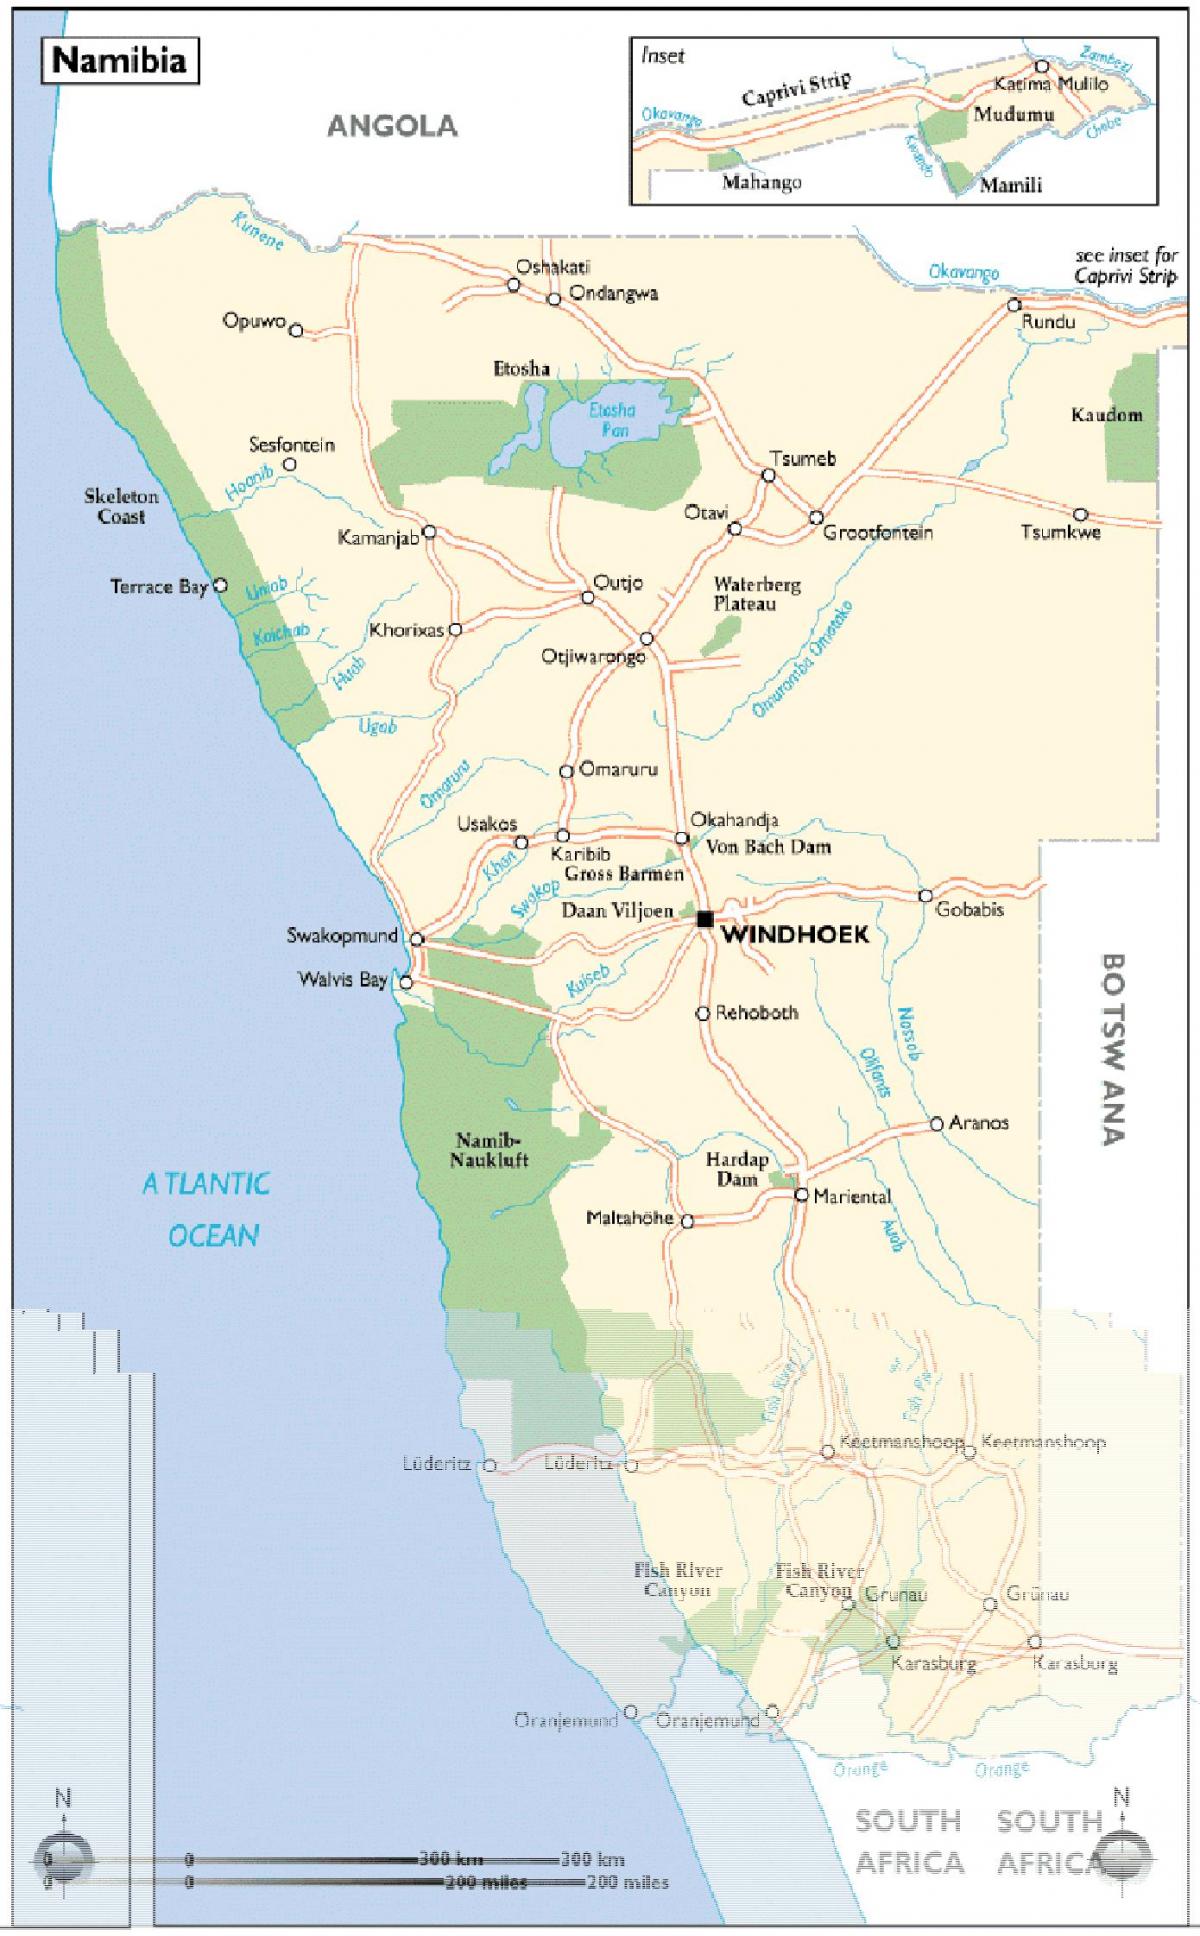 નામિબિયા આકર્ષણ નકશો